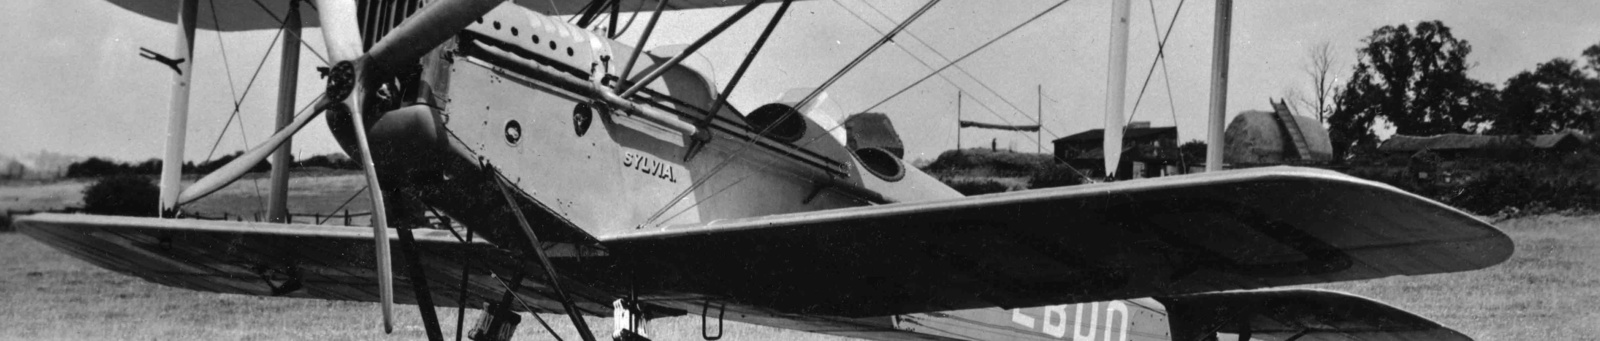 De Havilland DH37